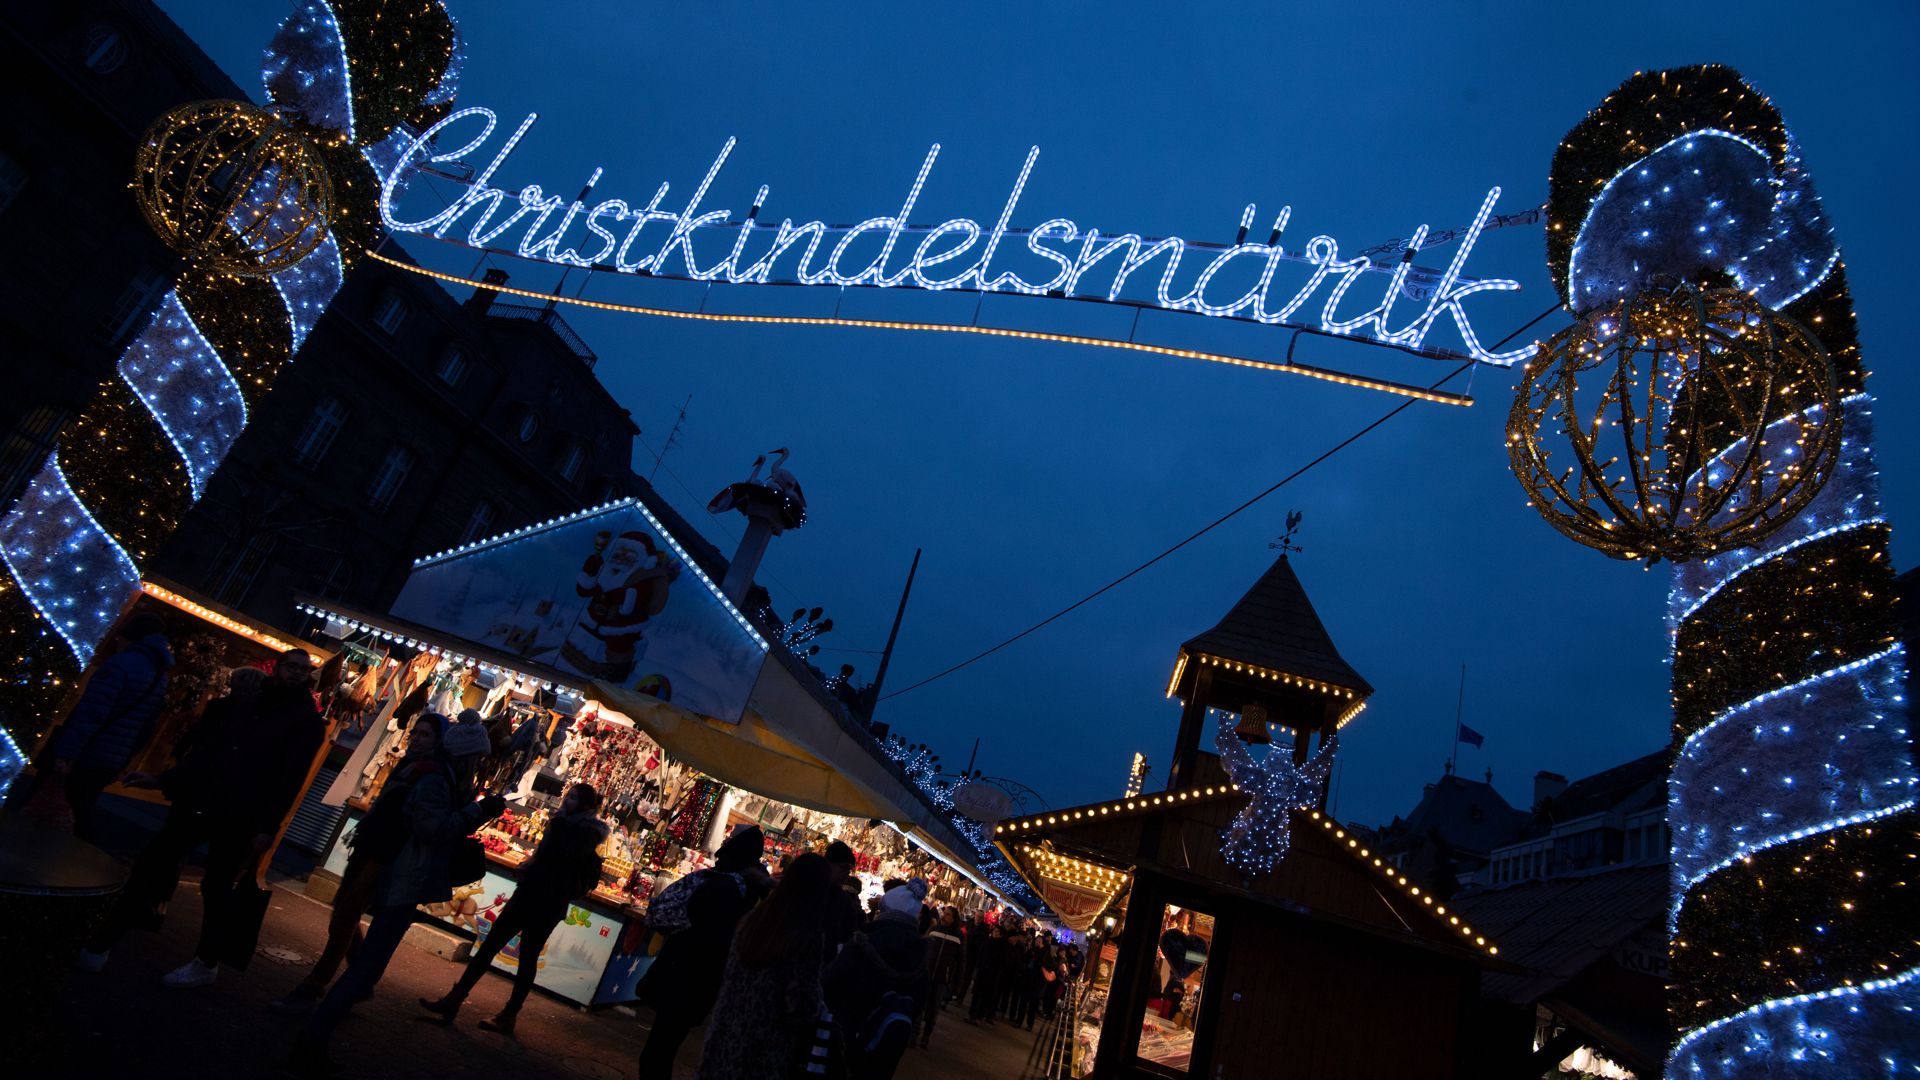 Willkommen zum „Christkindelsmärik“: Der berühmte Straßburger Weihnachtsmarkt öffnet am 24. November um 14 Uhr seine Pforten. Letzter Markttag ist an Heiligabend.